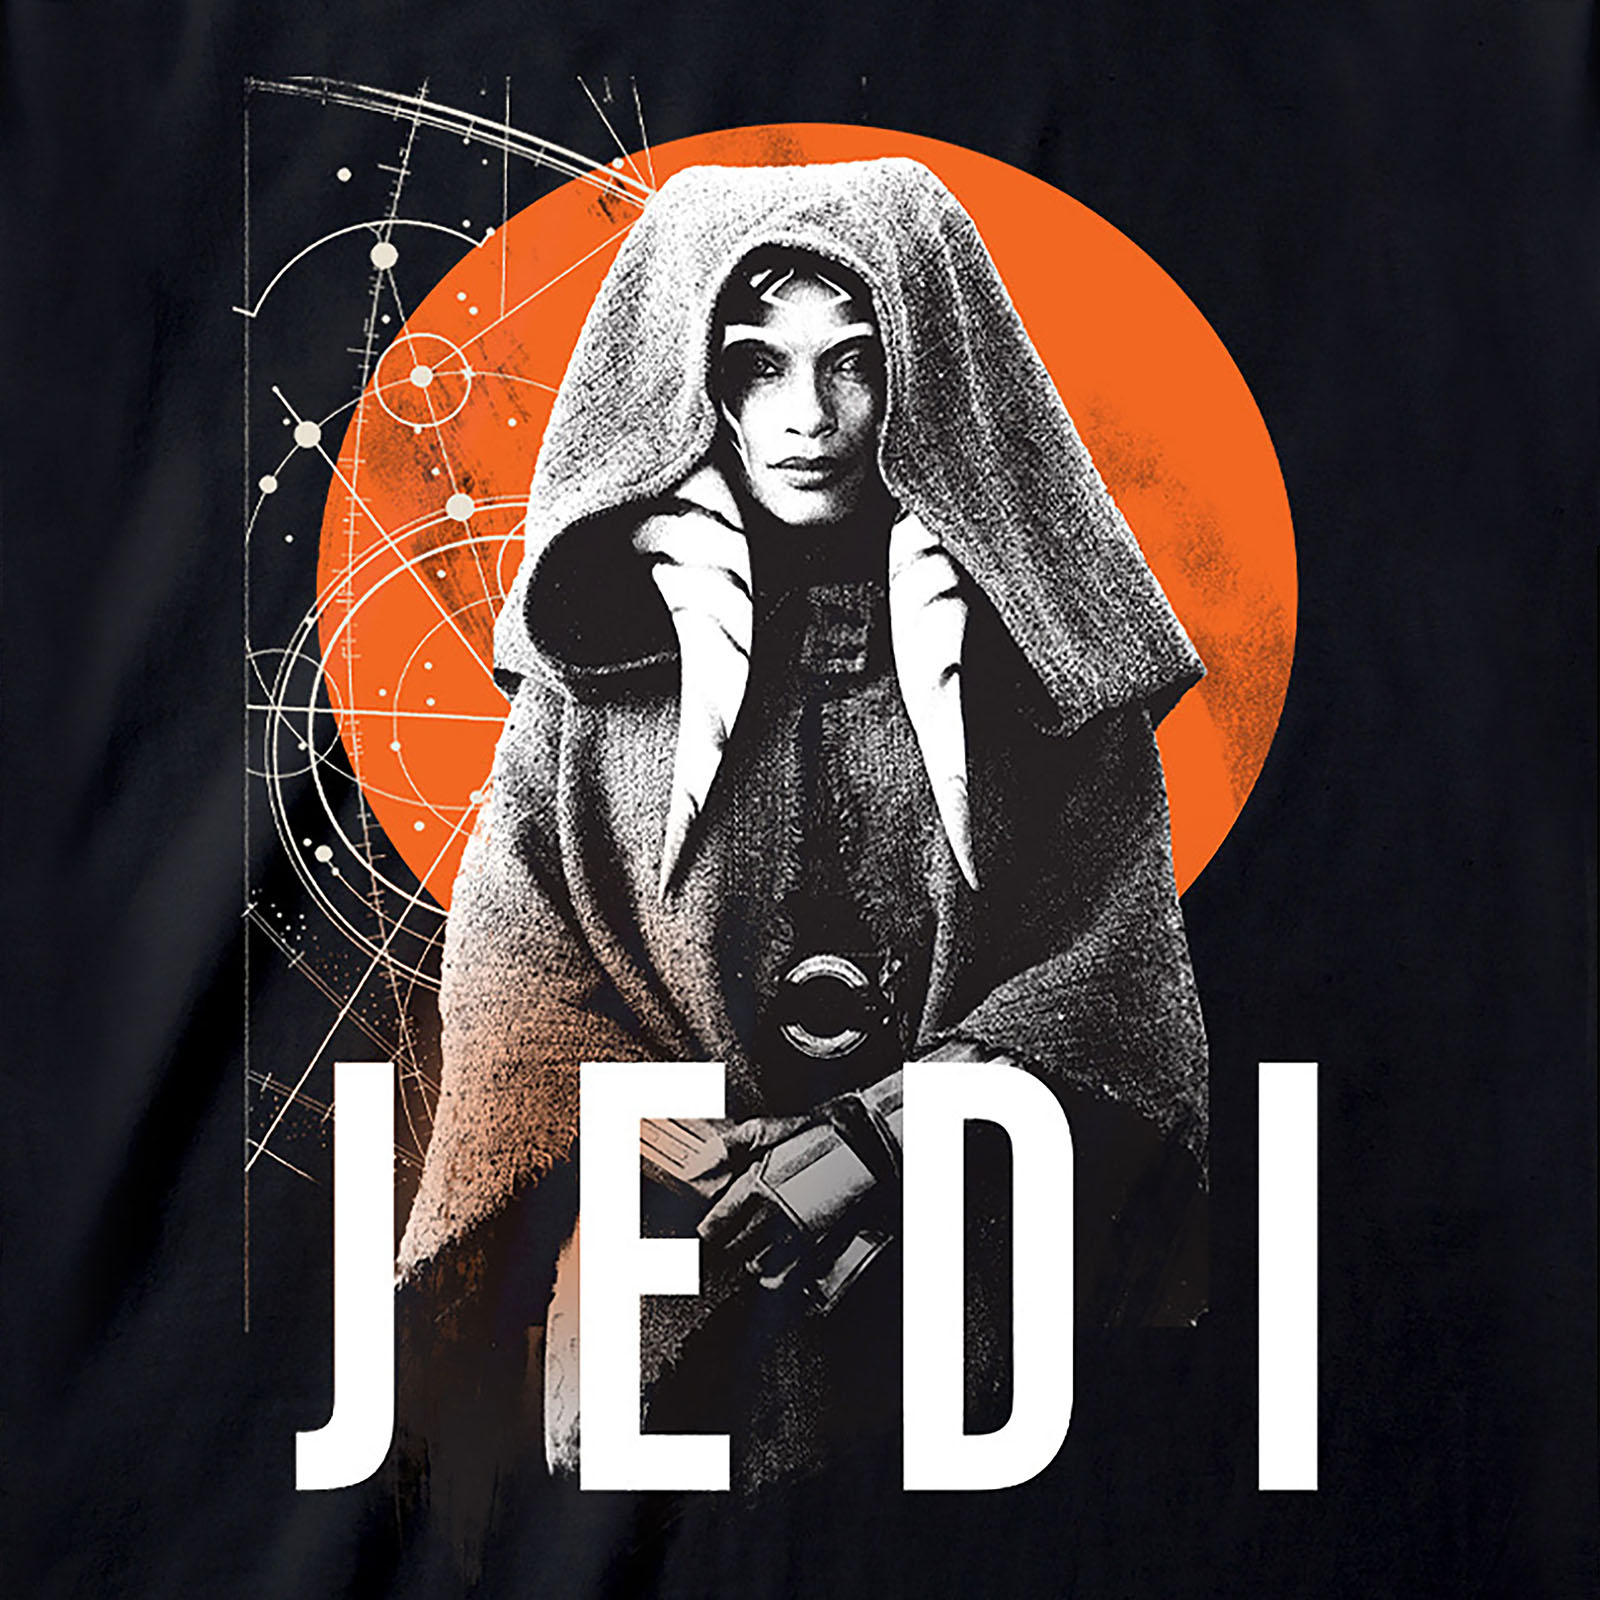 Star Wars - Ahsoka Jedi T-Shirt zwart